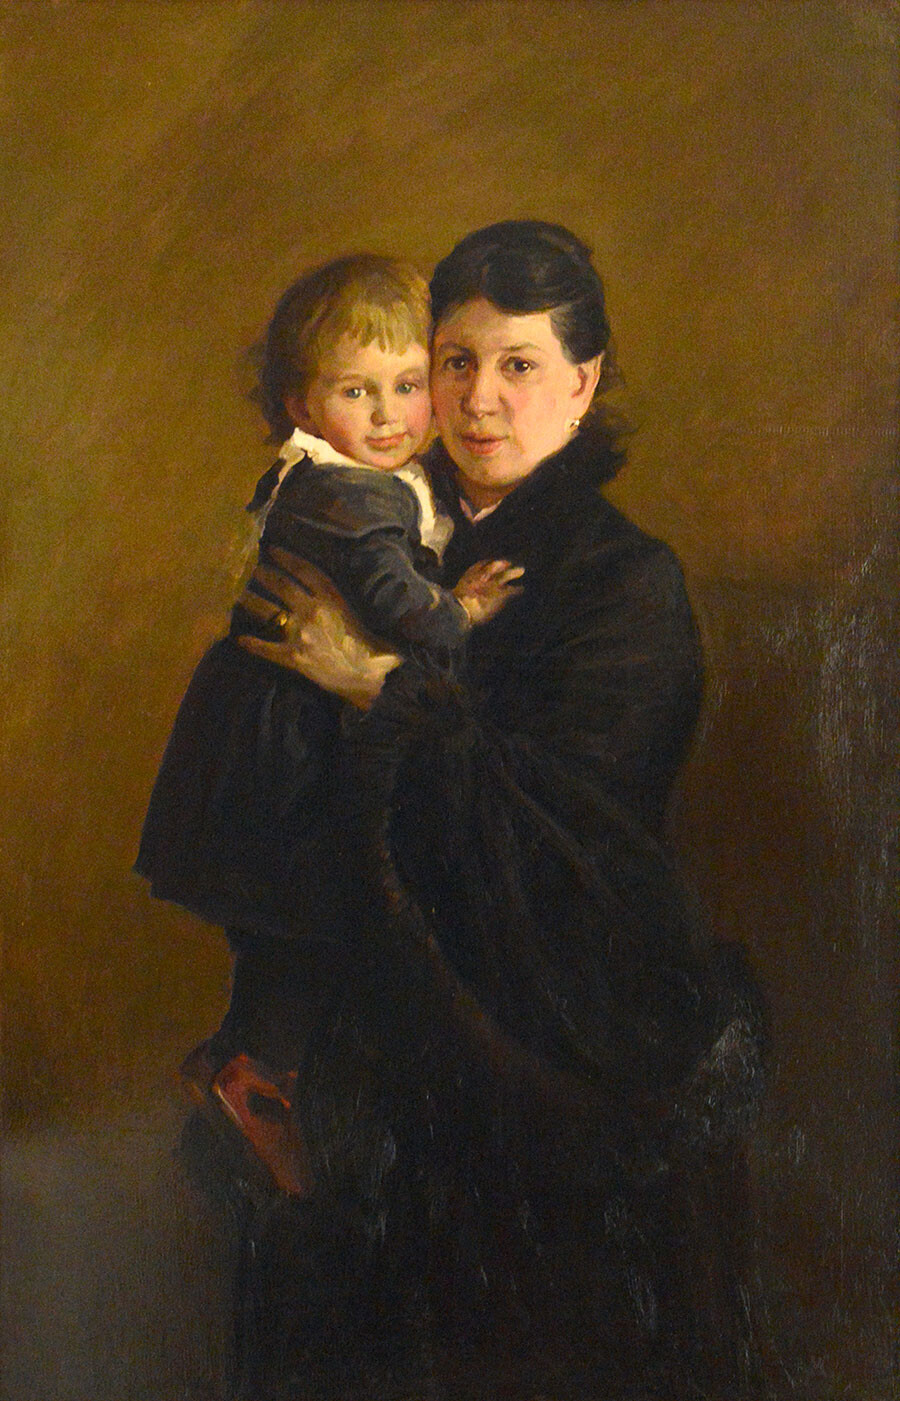 Ritratto della contessa Sofja Tolstaja (1844-1919), con la figlia Aleksandra, ritrovato nella collezione del Museo di Stato di Lev Tolstoj, a Mosca